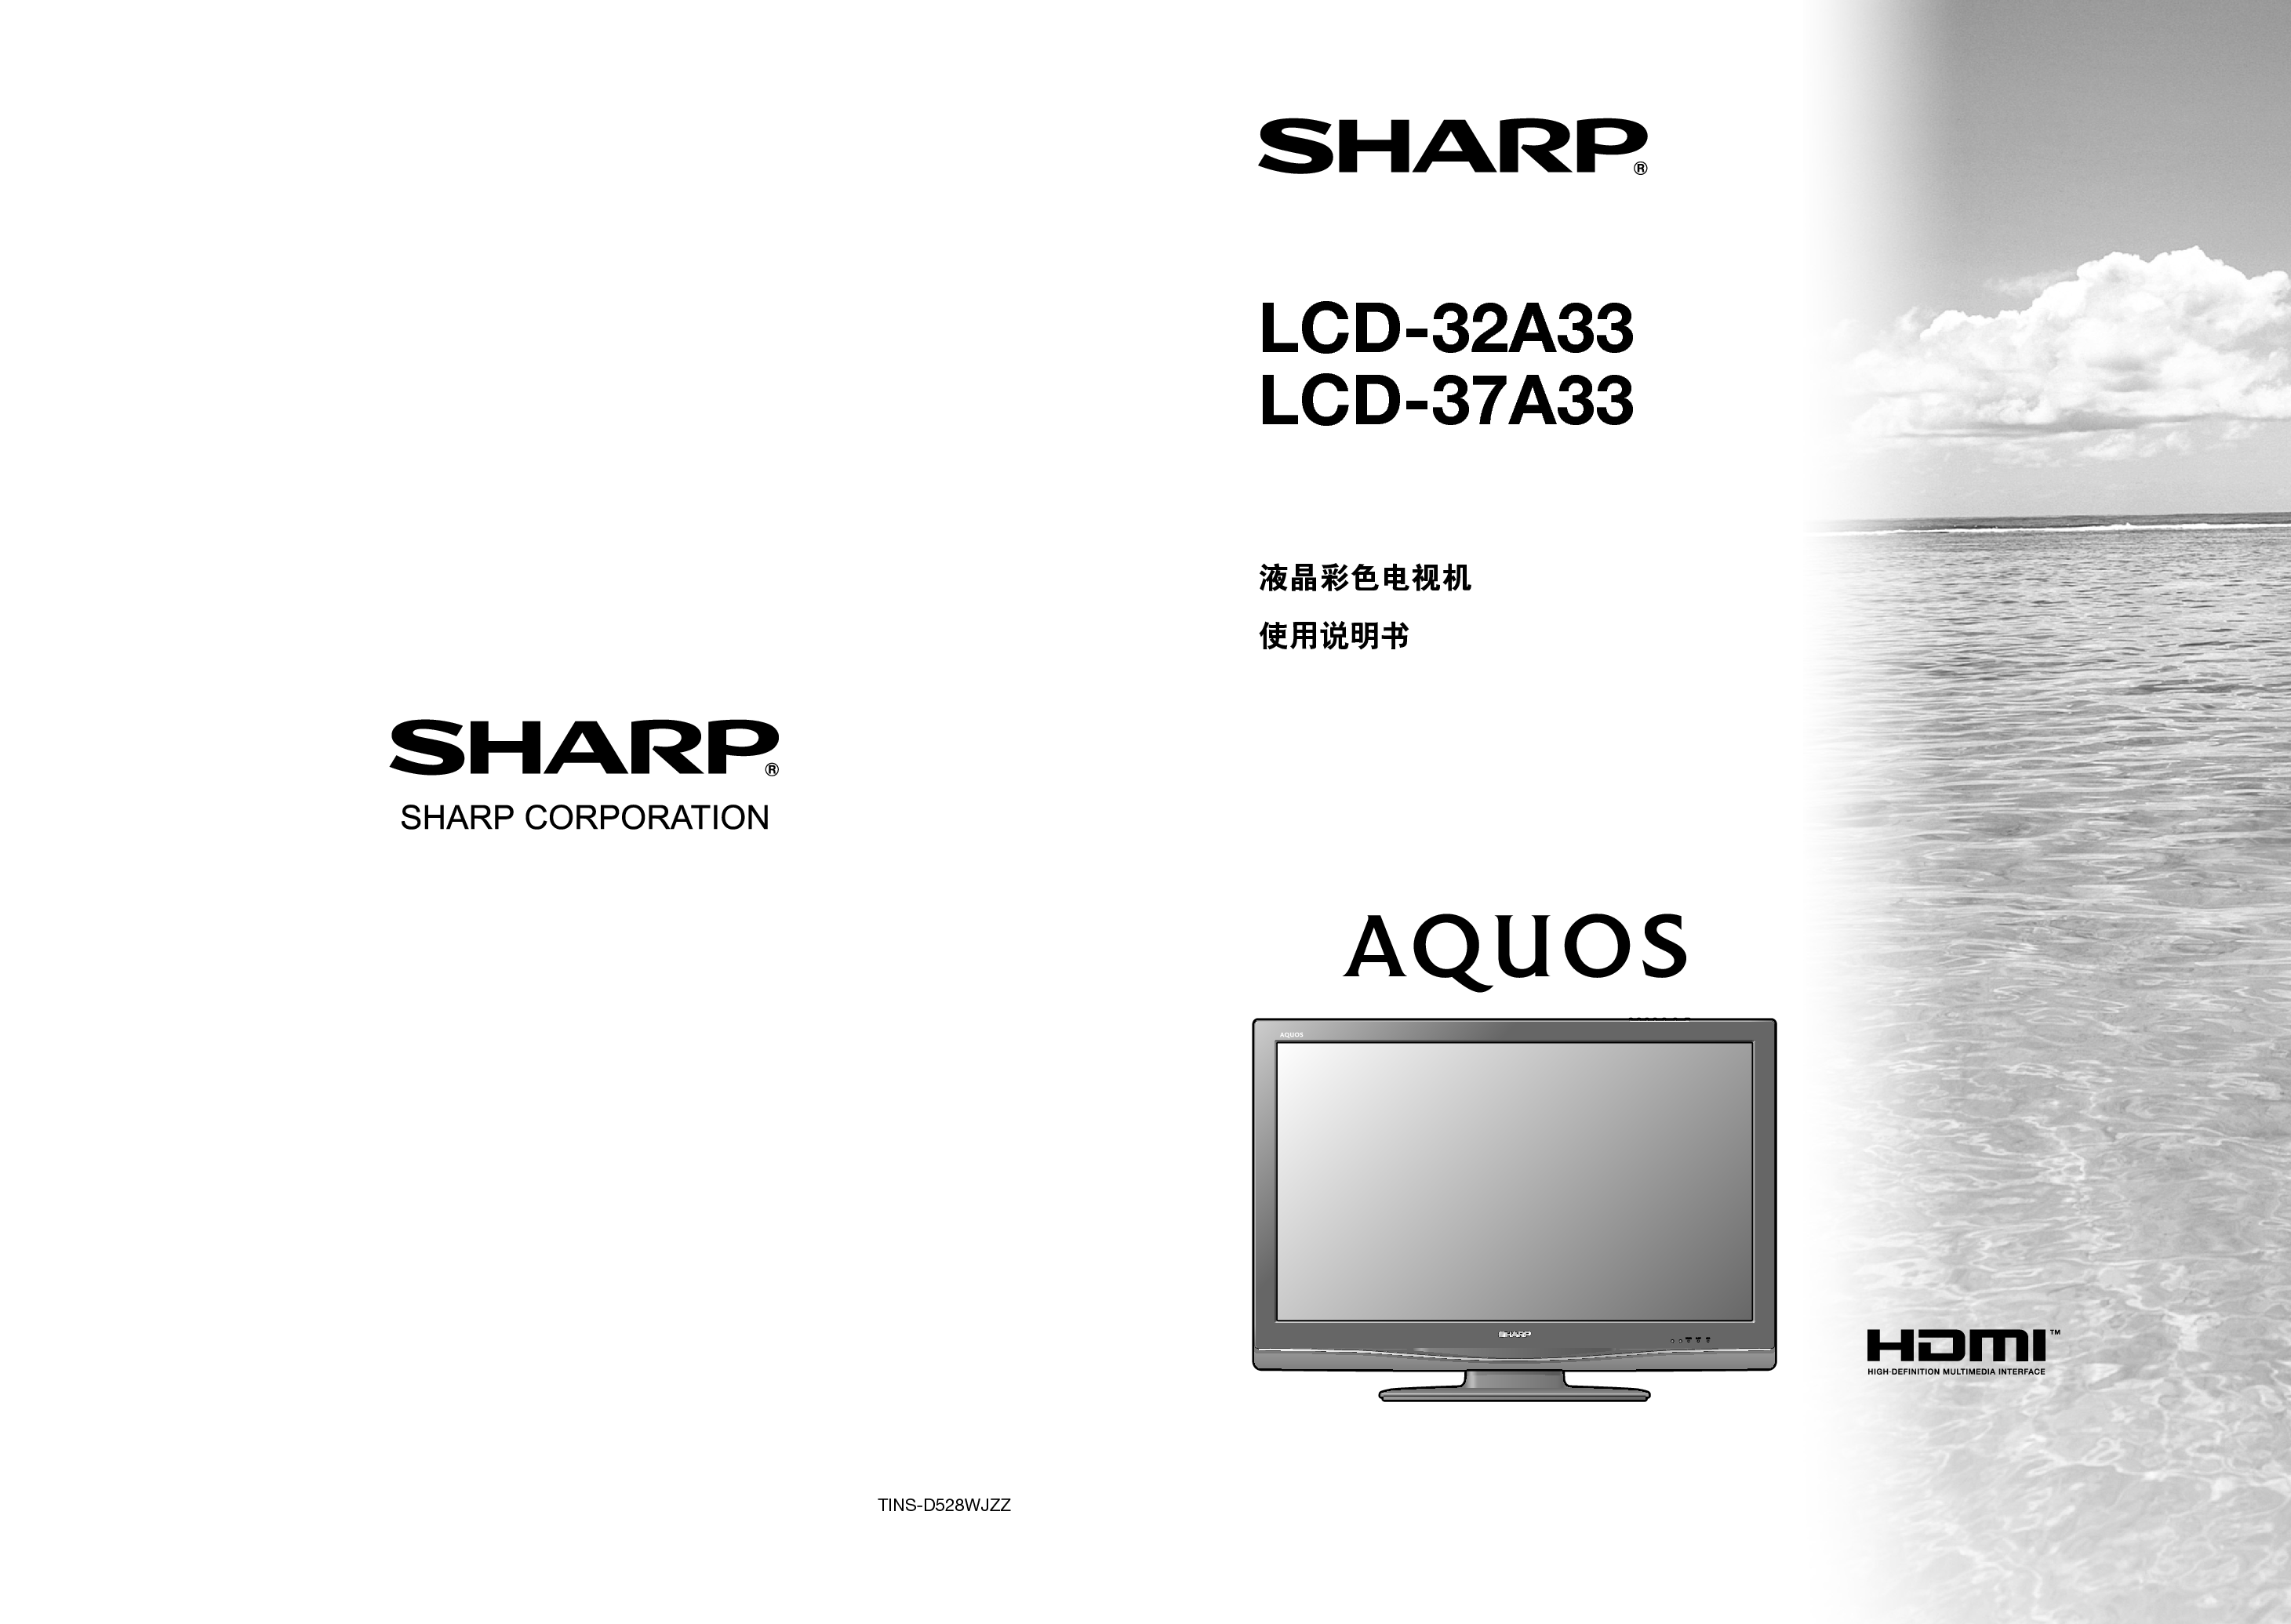 夏普 Sharp LCD-32A33 说明书 封面